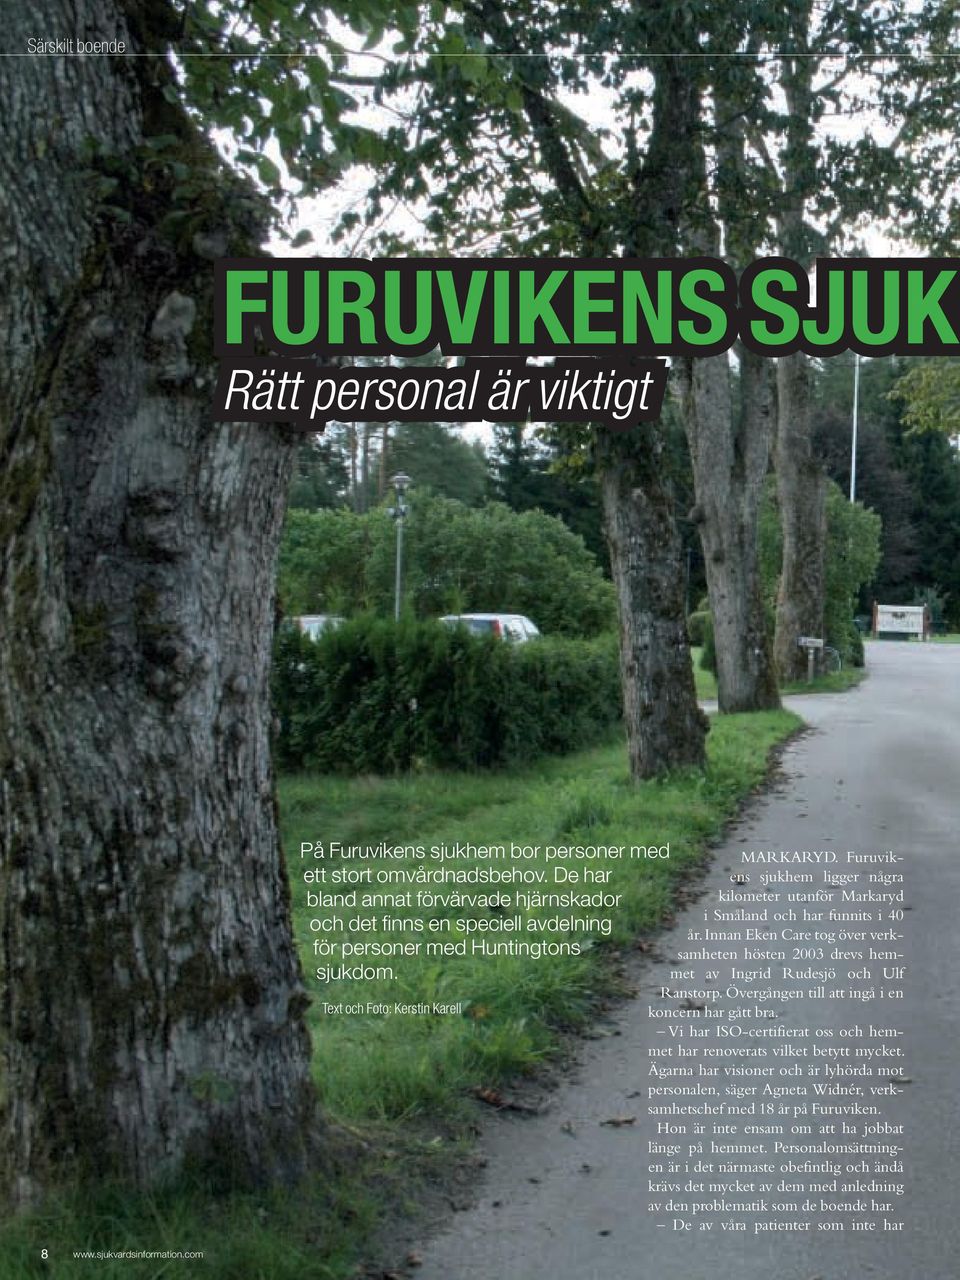 Furuvikens sjukhem ligger några kilometer utanför Markaryd i Småland och har funnits i 40 år. Innan Eken Care tog över verksamheten hösten 2003 drevs hemmet av Ingrid Rudesjö och Ulf Rans torp.